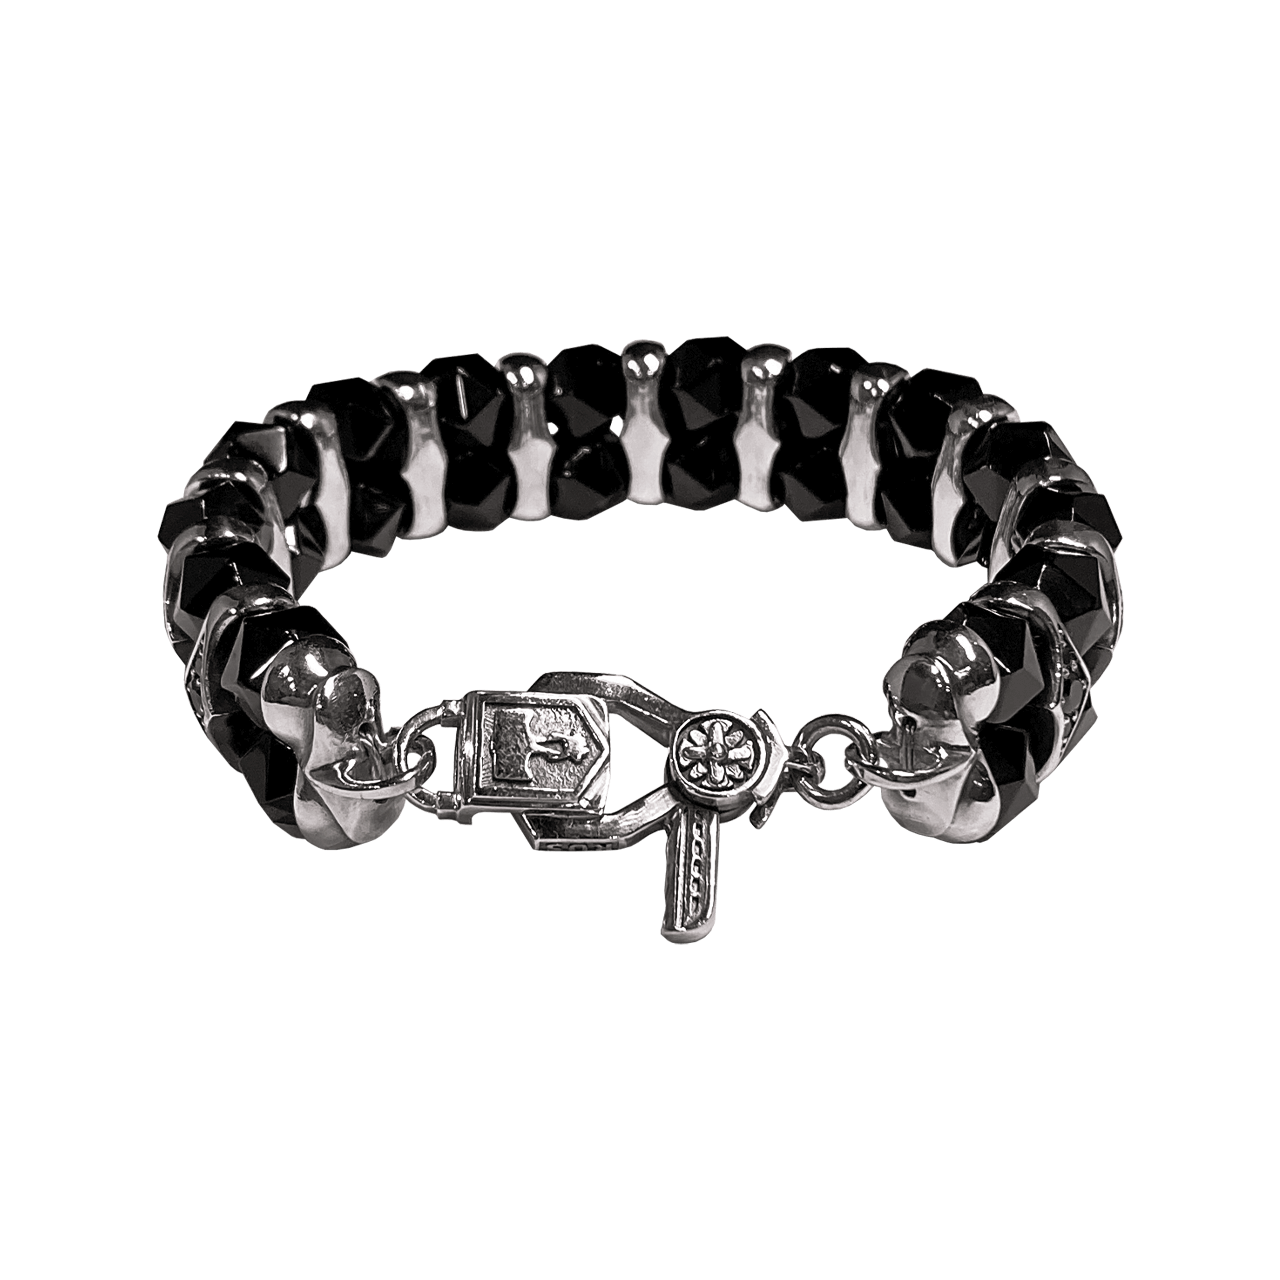 Мужской серебряный браслет Glam Black Gems с бусинами агата и вставками фианита - фото №2